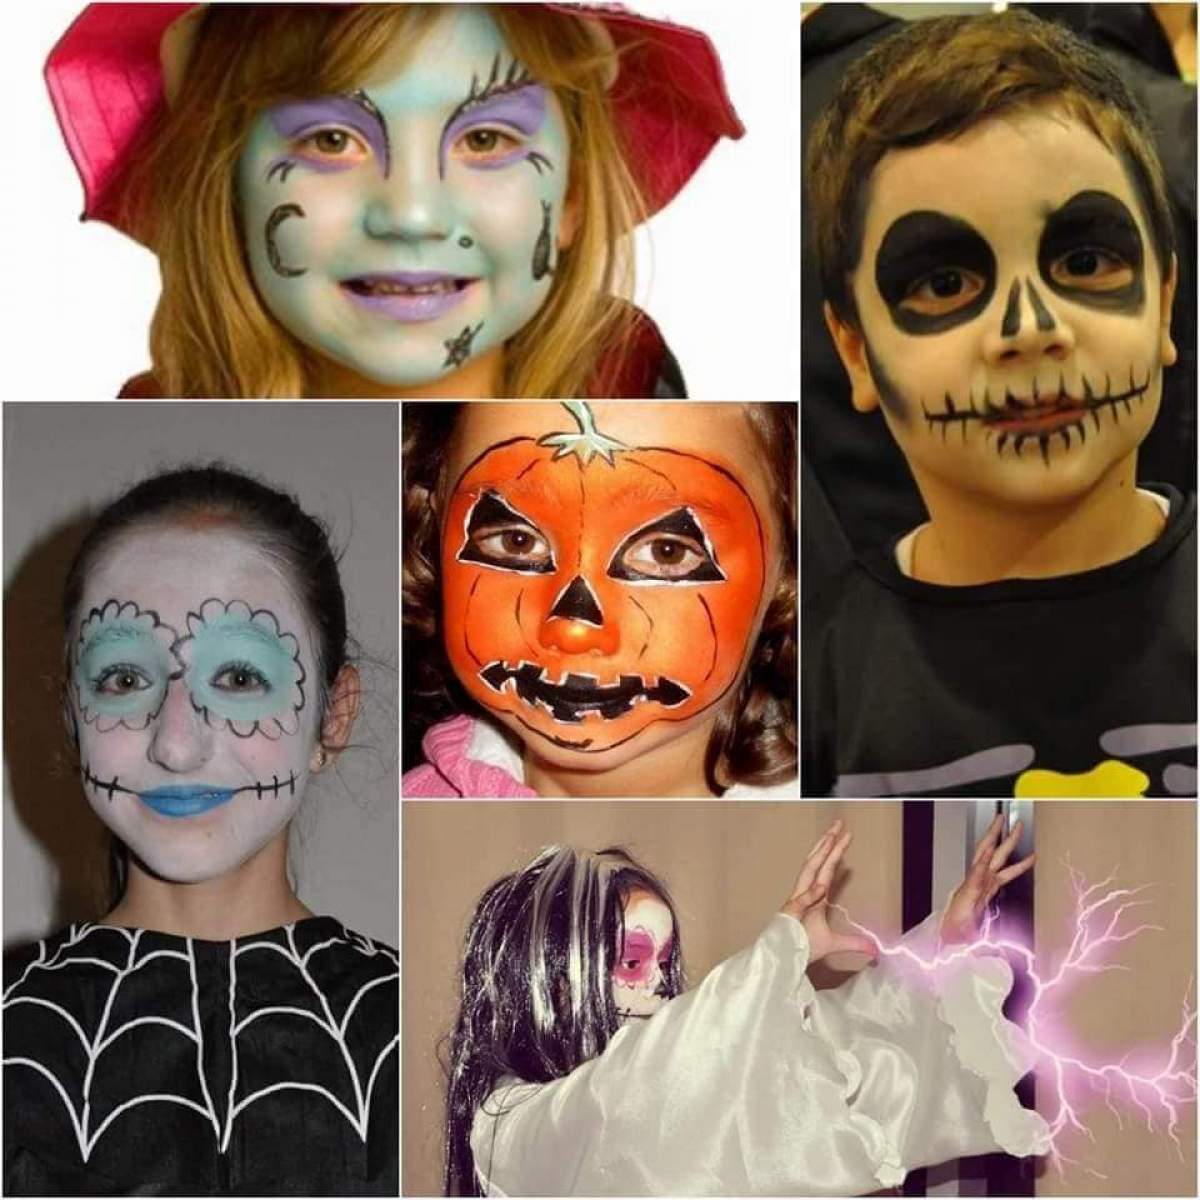 Machiaje de Halloween simplu pentru copii. 3 idei frumoase pentru serbări sau petreceri